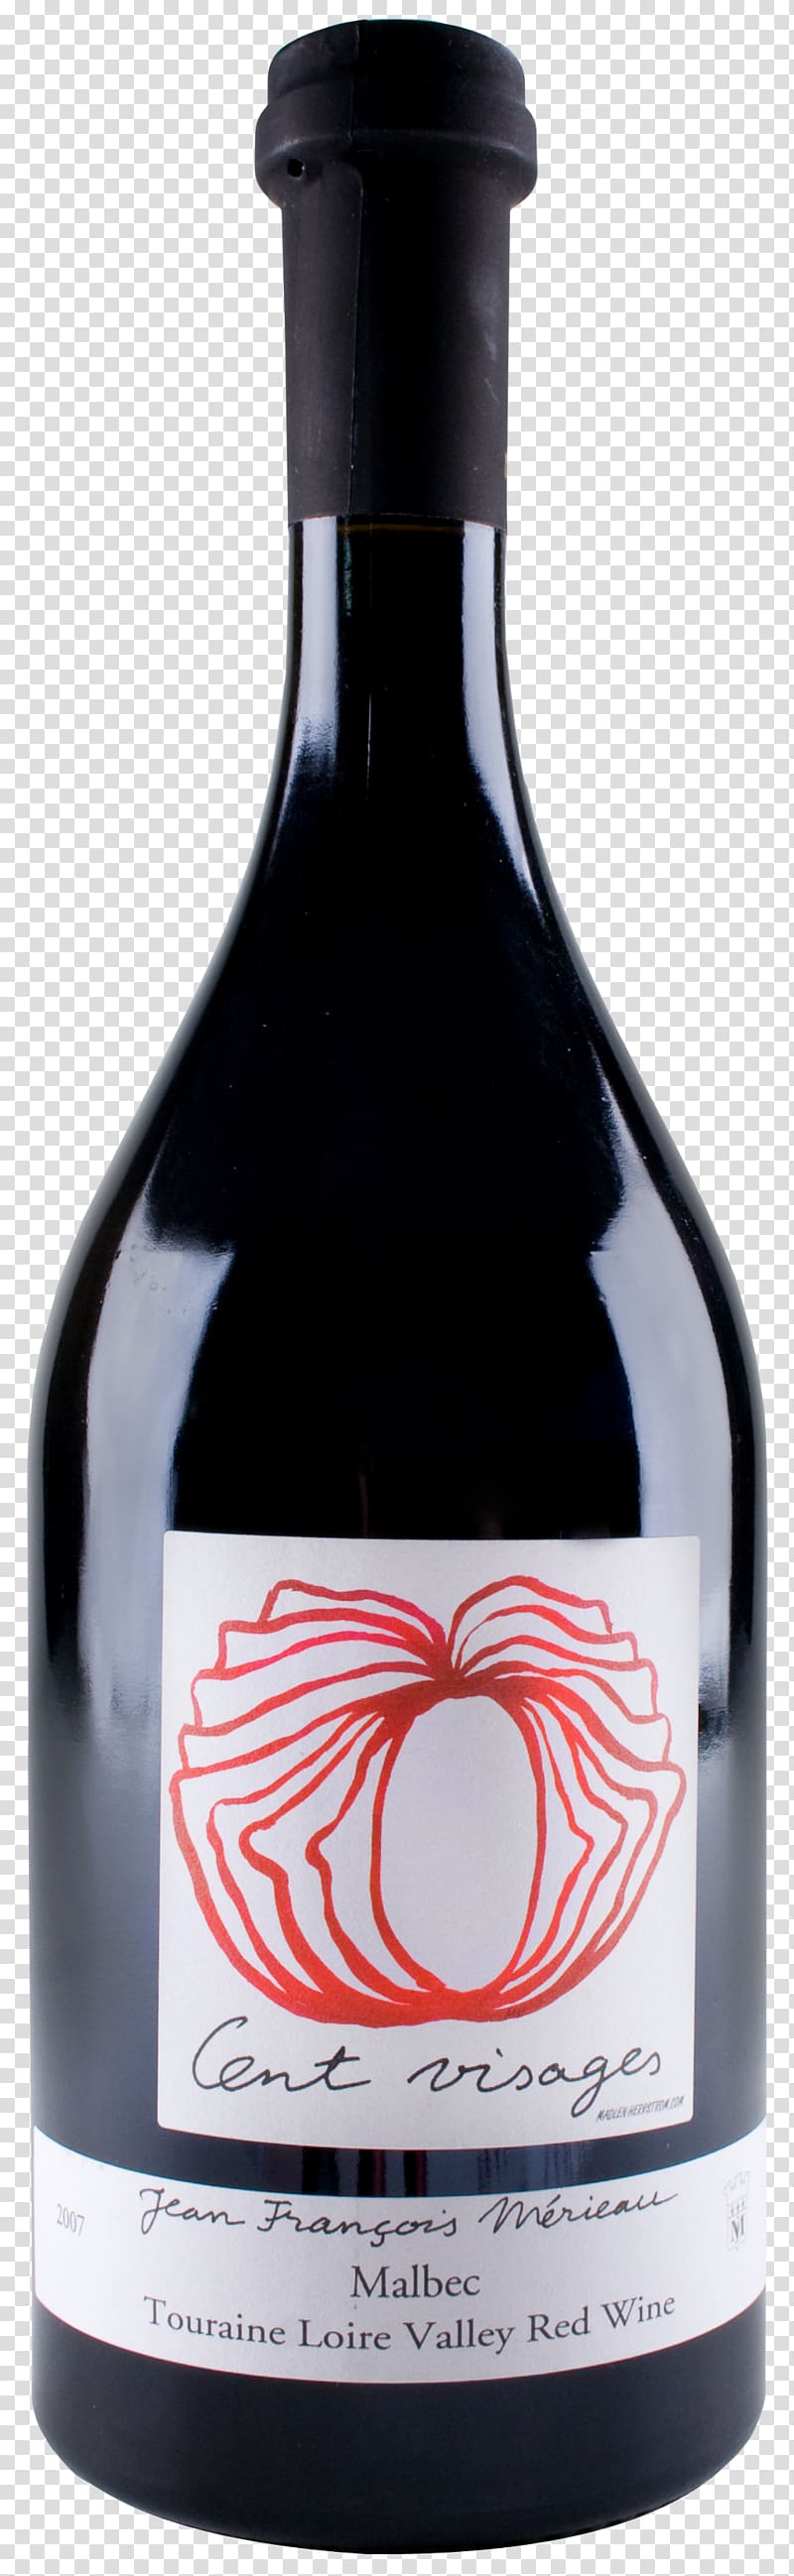 Liqueur Wine Glass bottle Liquid, wine transparent background PNG clipart